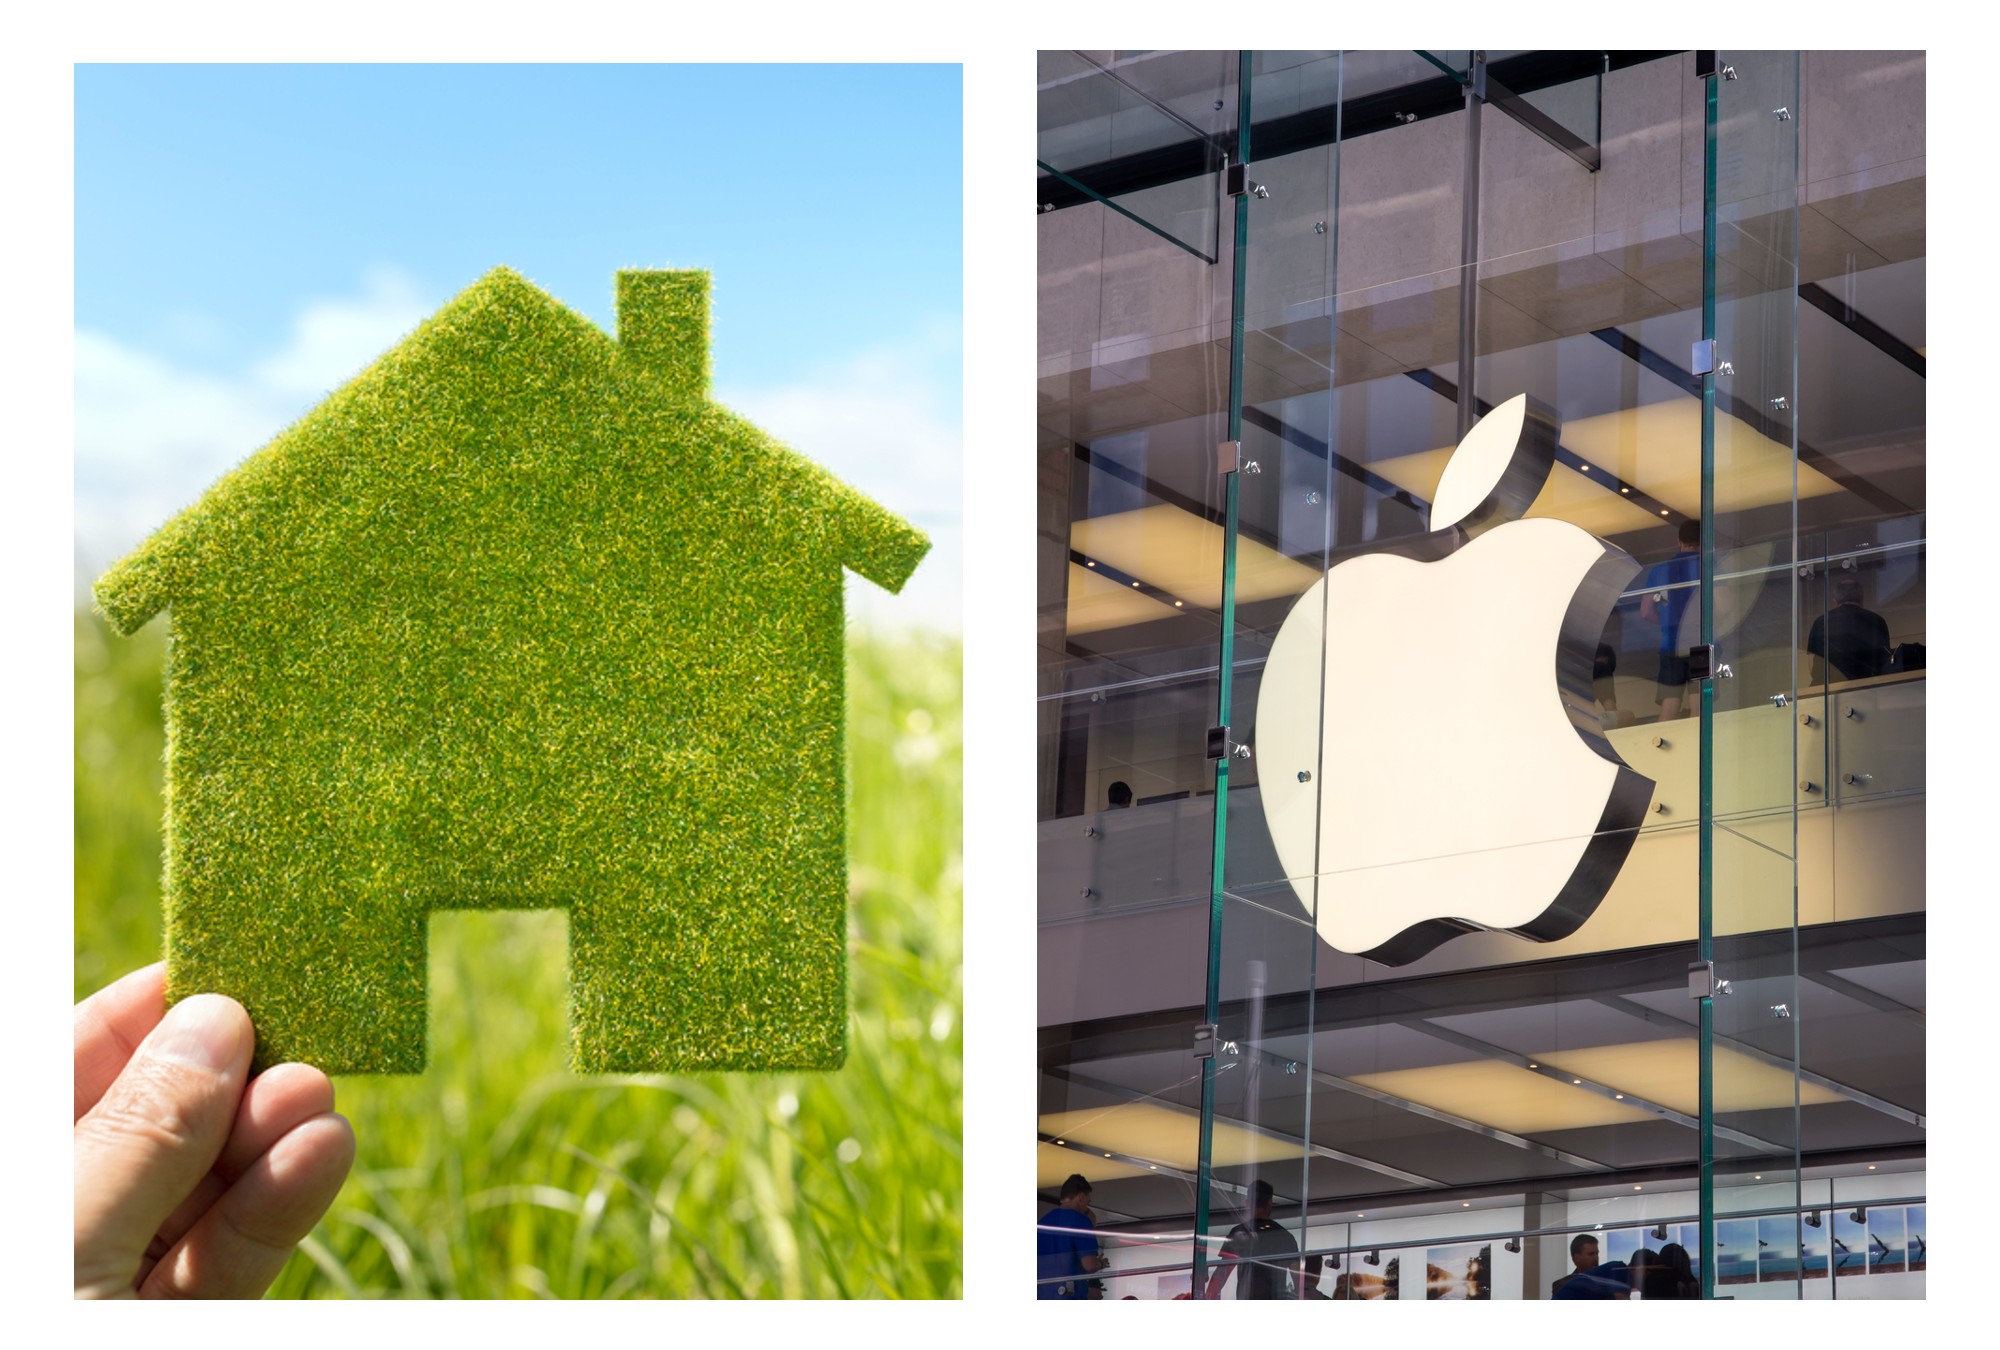 Apple quiere ser neutral en sus emisiones de carbono.